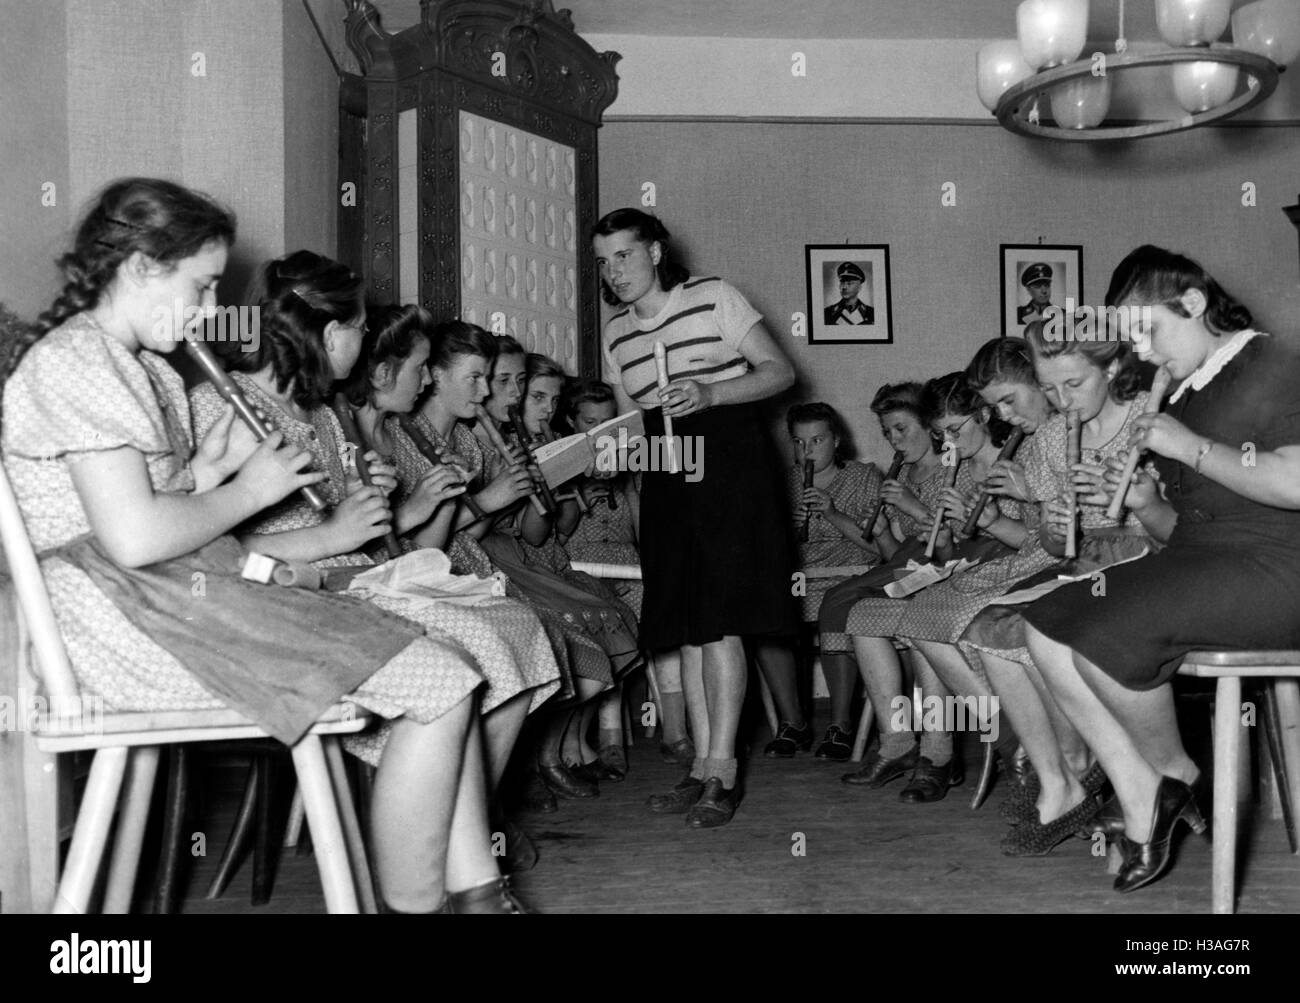 Landjahrmaedel playing music, 1941 Stock Photo